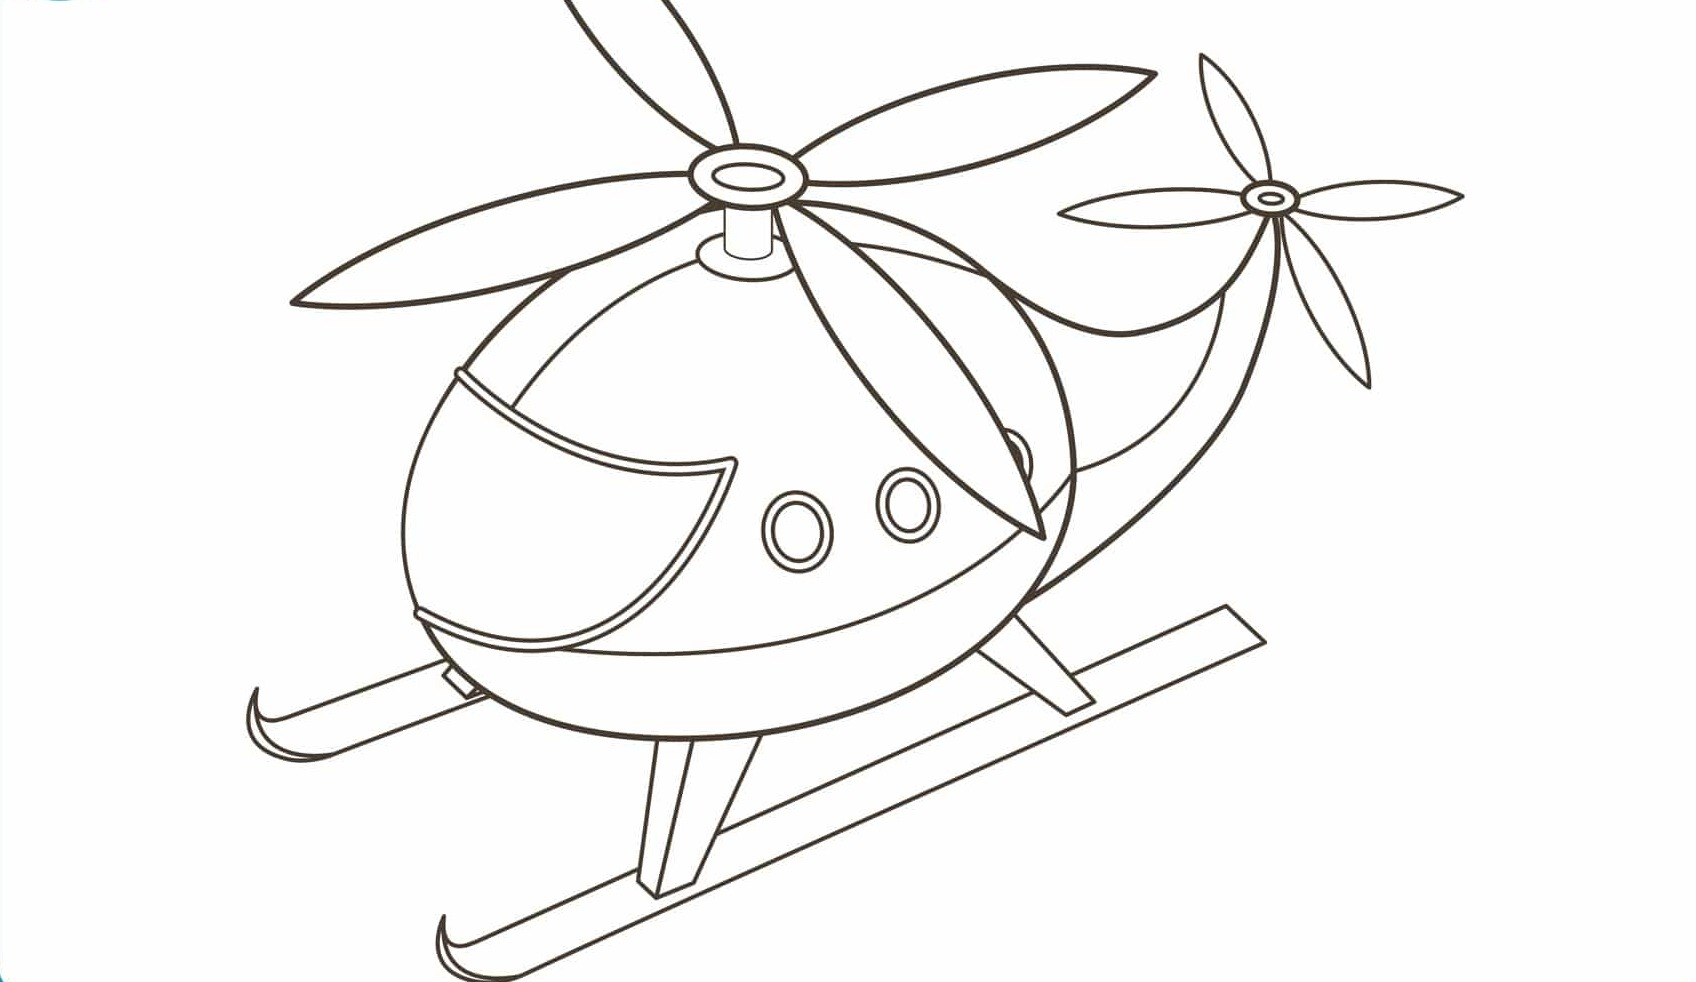 dibujos colorear aviones helicopteros